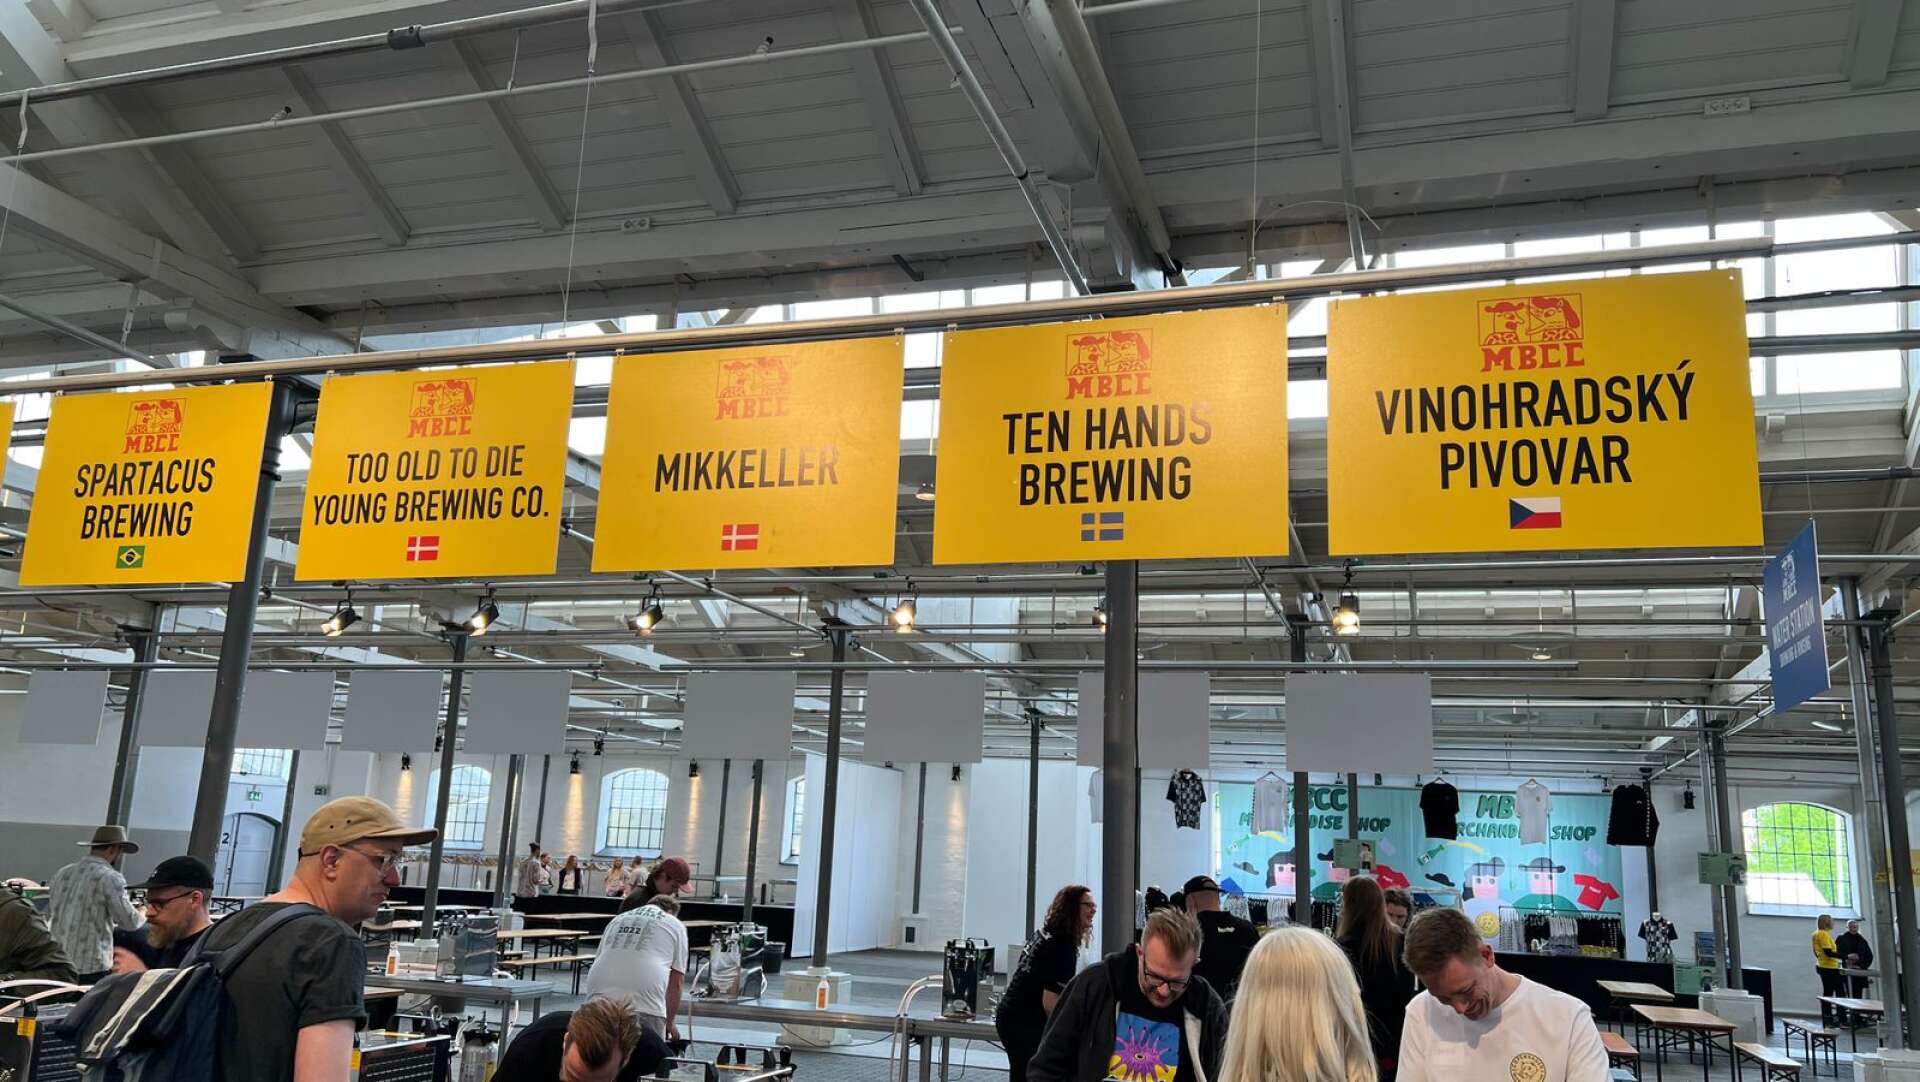 Så här kan det se ut på MBCC-festivalen i Köpenhamn. Första årets lyckades Ten Hands få med sig 18 öl över sundet, för man fick också göra en så kallad tap takeover på en bar. Och naturligtvis skulle det vara olika öl på de båda ställena. Samtidigt skulle man förbereda inför ”Systembolagsbryggningen”. ” Då gällde det att planera klokt och verkligen maxa, men det gick!”, säger Robert Hedell.